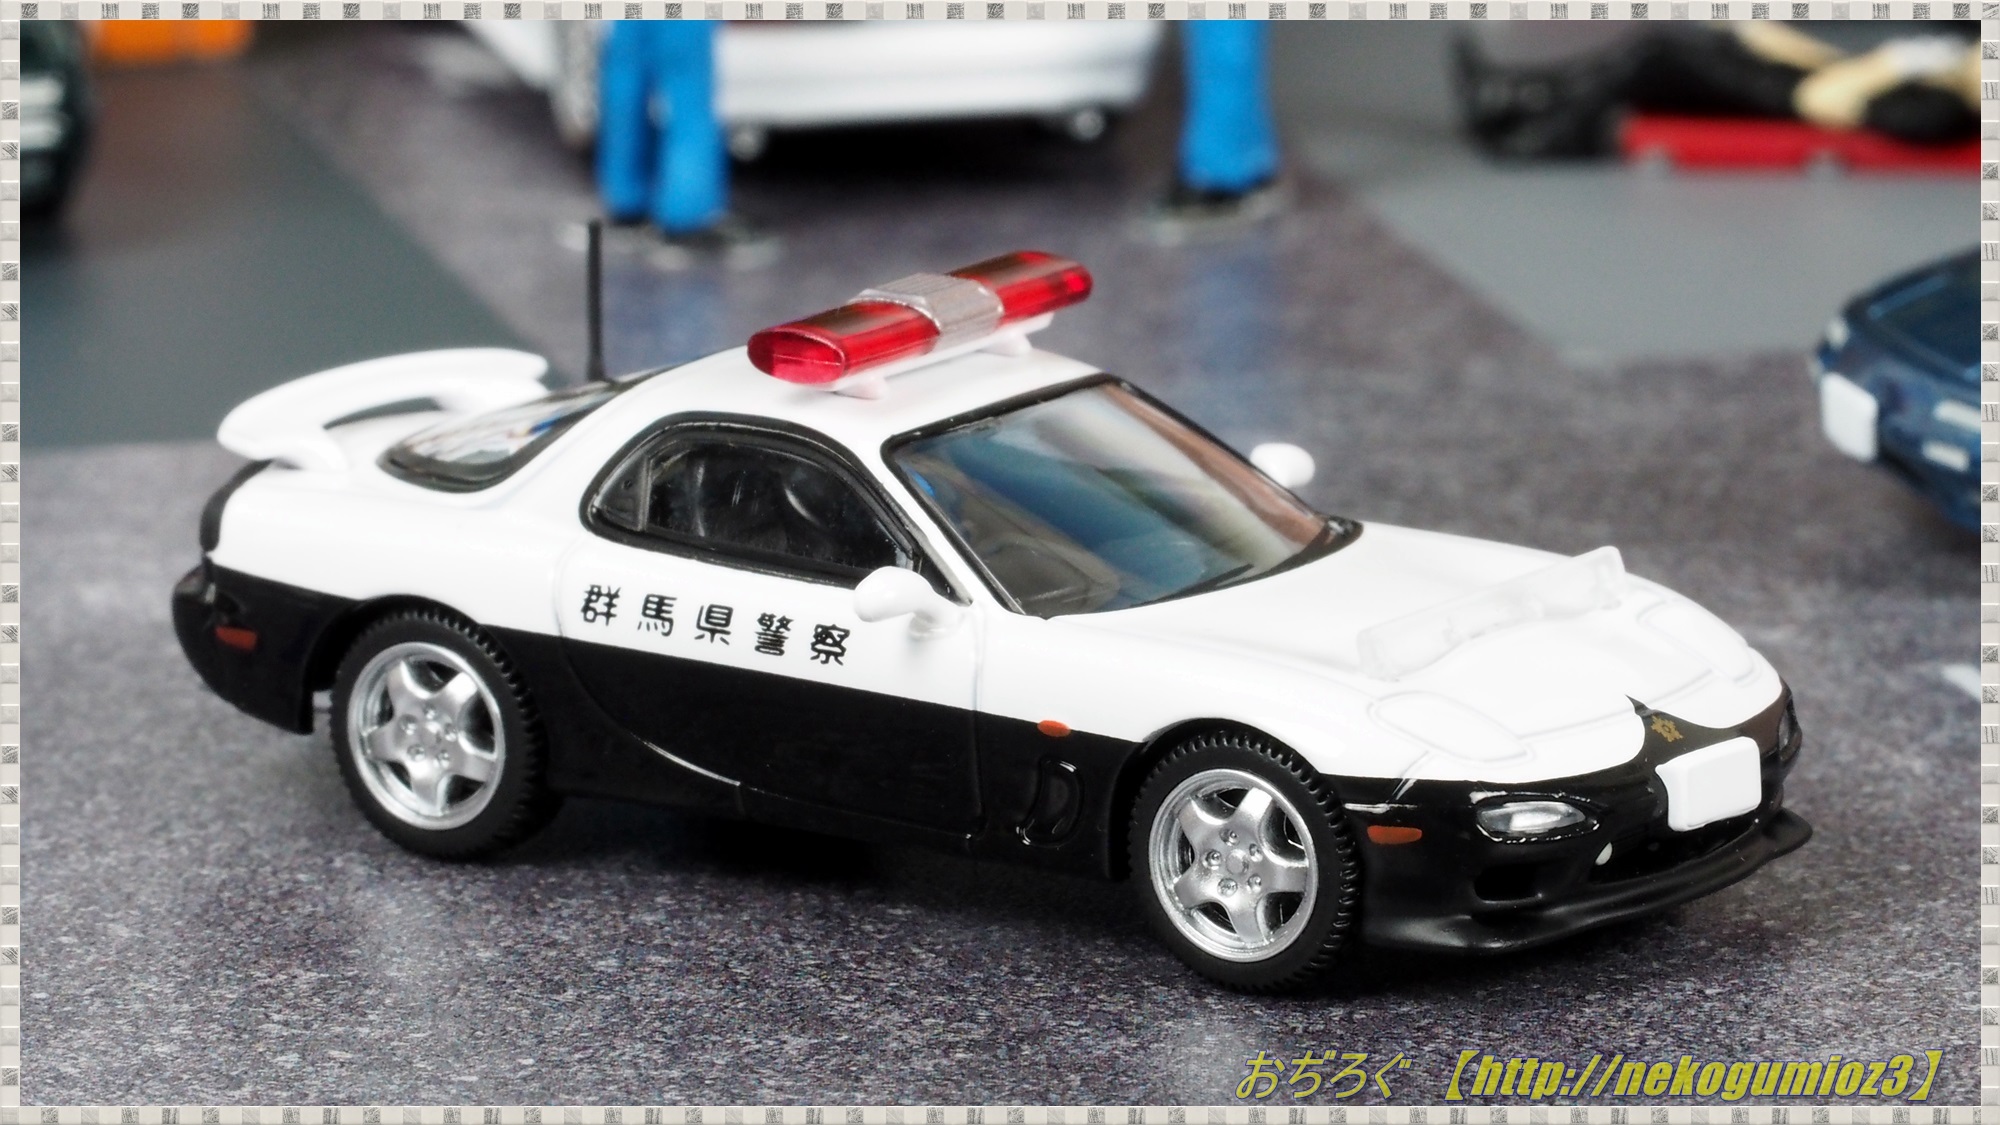 LV-N180a マツダ RX-7 パトロールカー 群馬県警察 (98年式) トミカ 